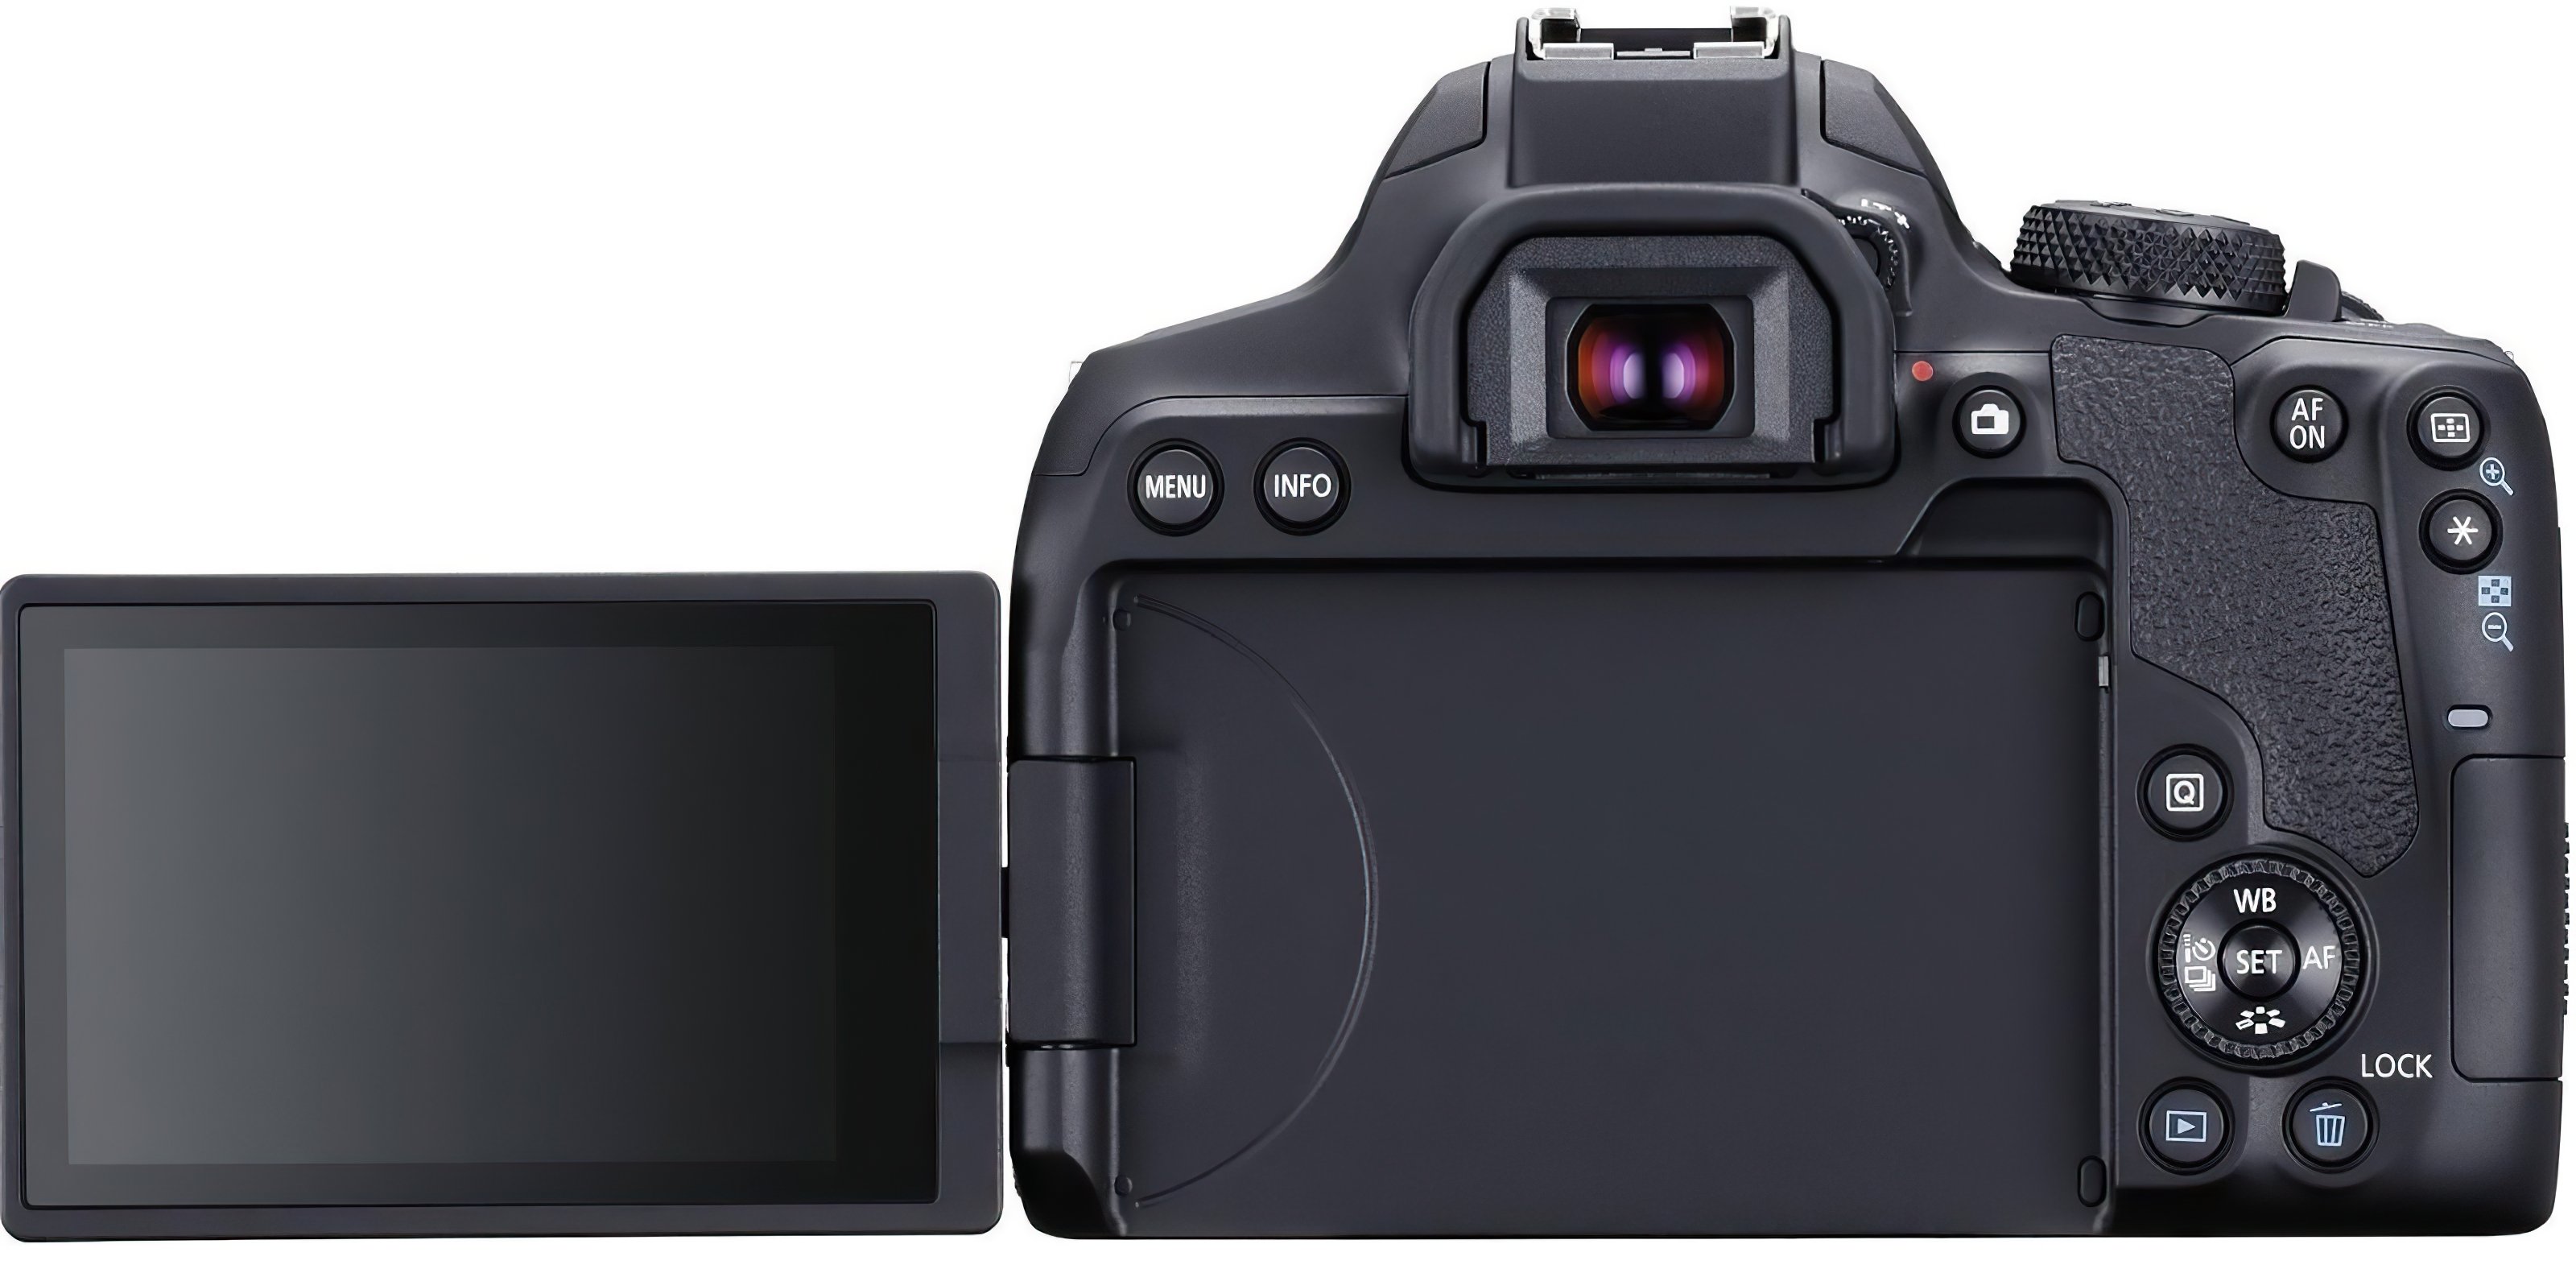 Фотоаппарат Canon EOS 850D Body, черный